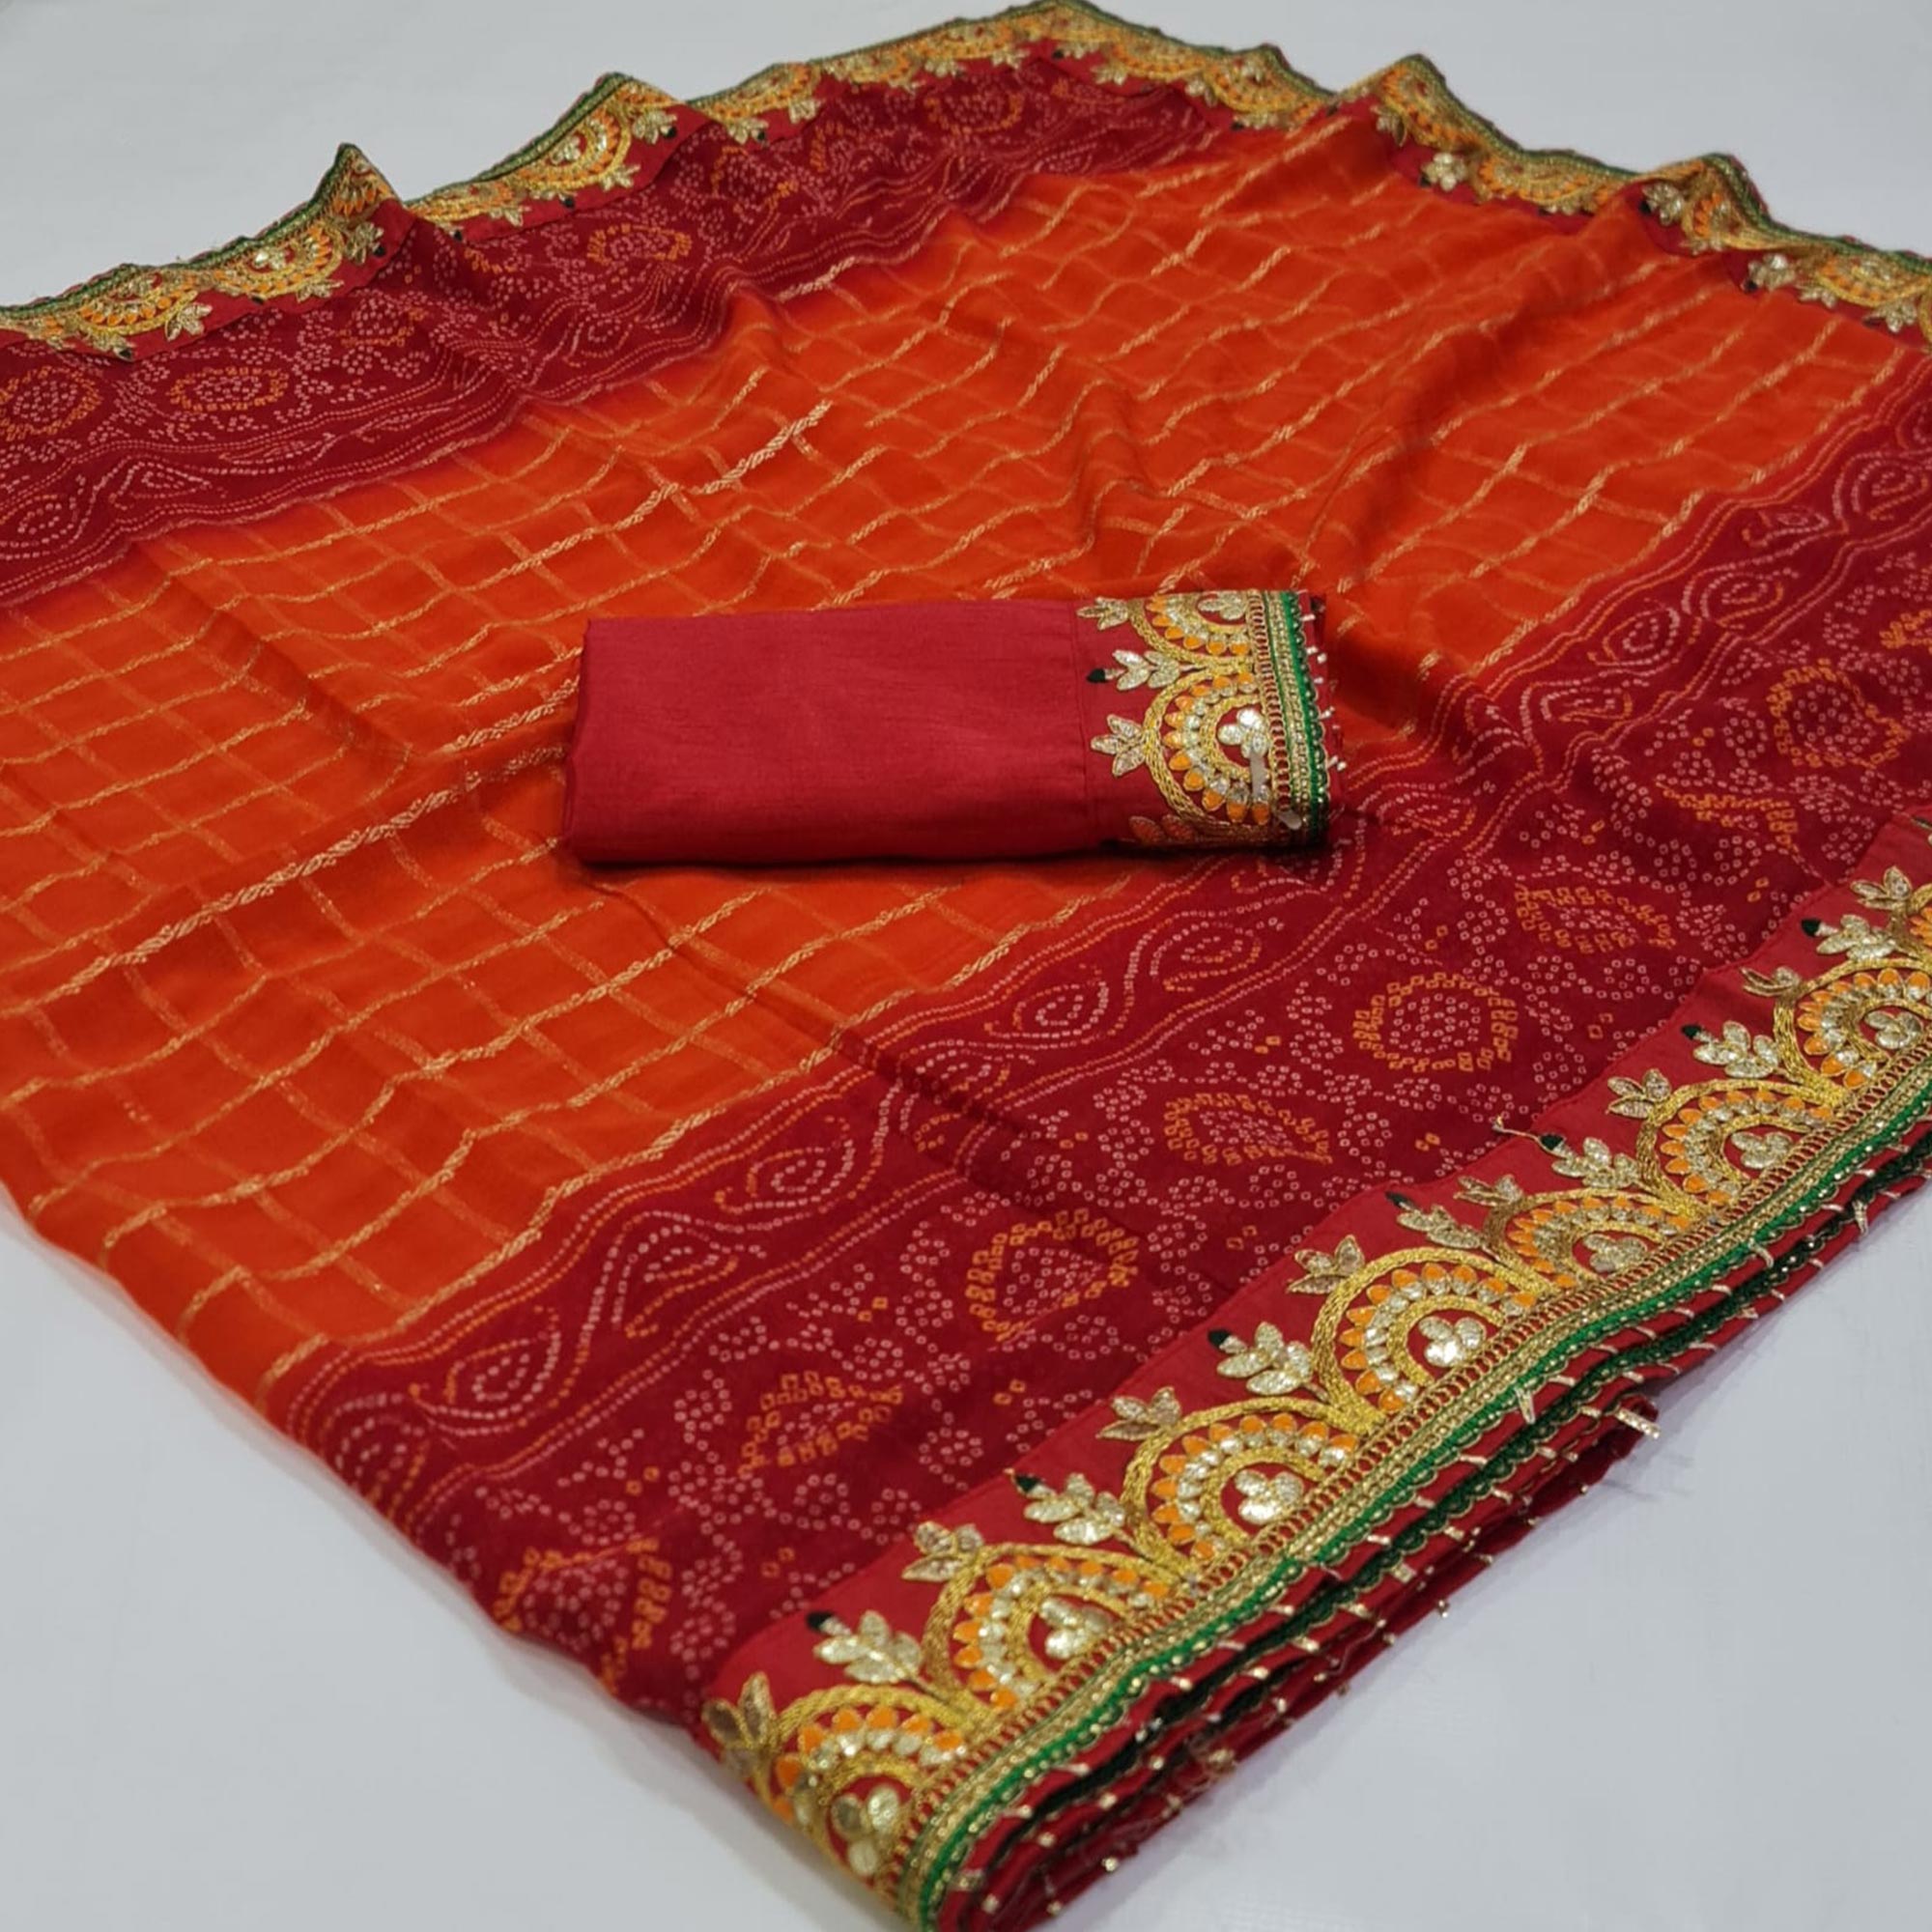 Red & Orange Bandhani Foil Printed Chiffon Saree